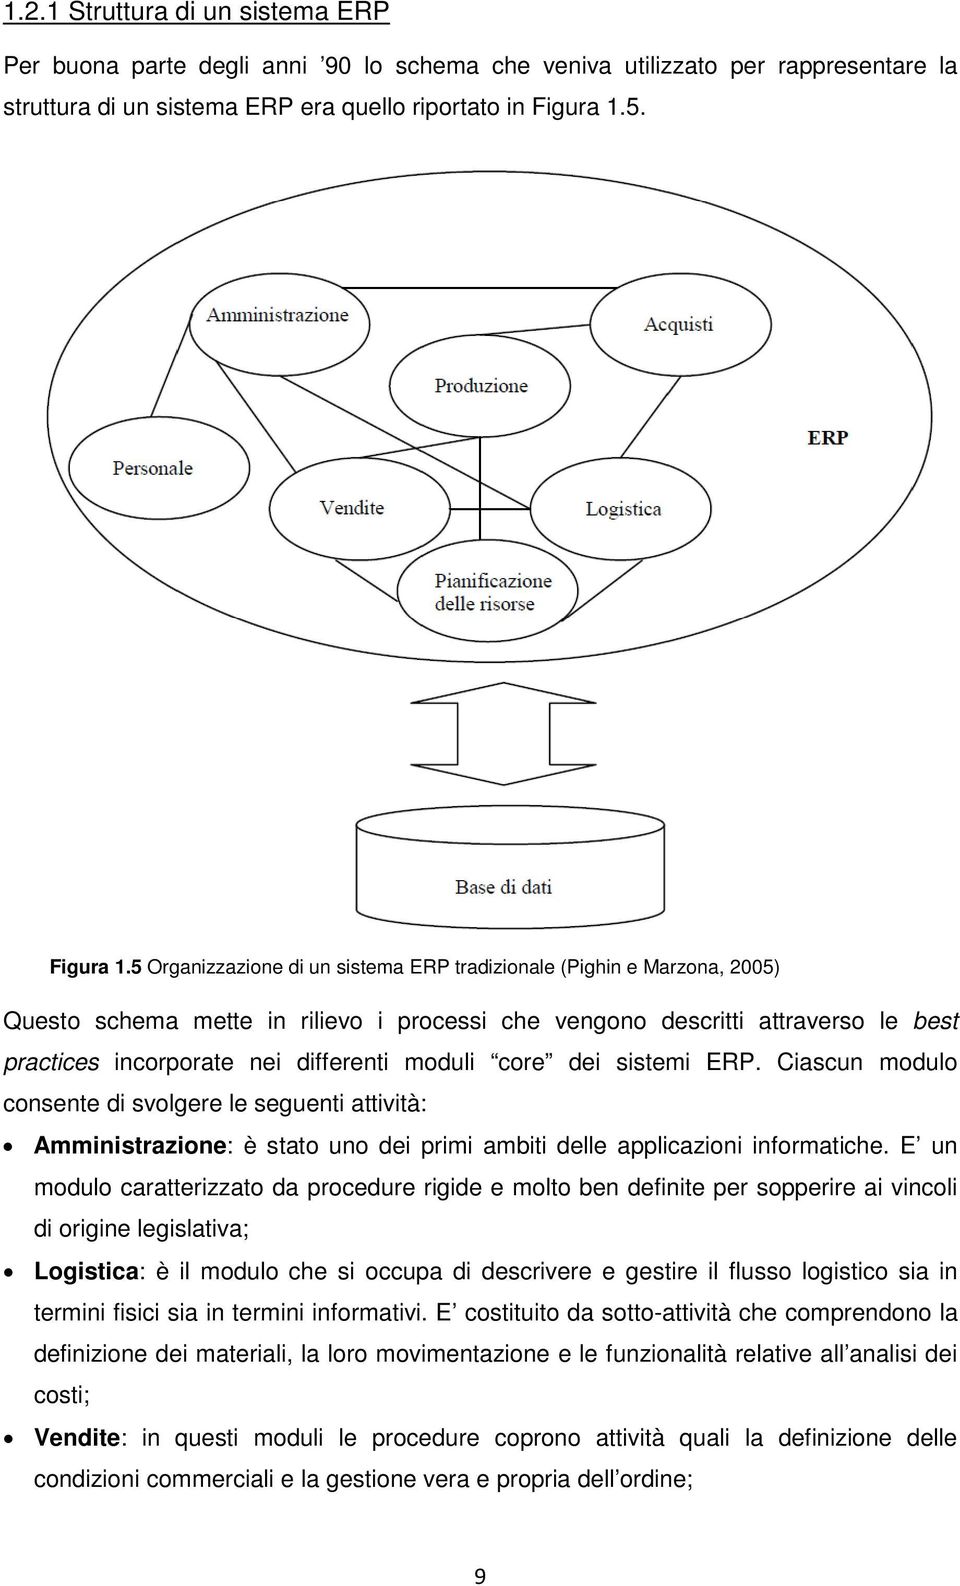 5 Organizzazione di un sistema ERP tradizionale (Pighin e Marzona, 2005) Questo schema mette in rilievo i processi che vengono descritti attraverso le best practices incorporate nei differenti moduli